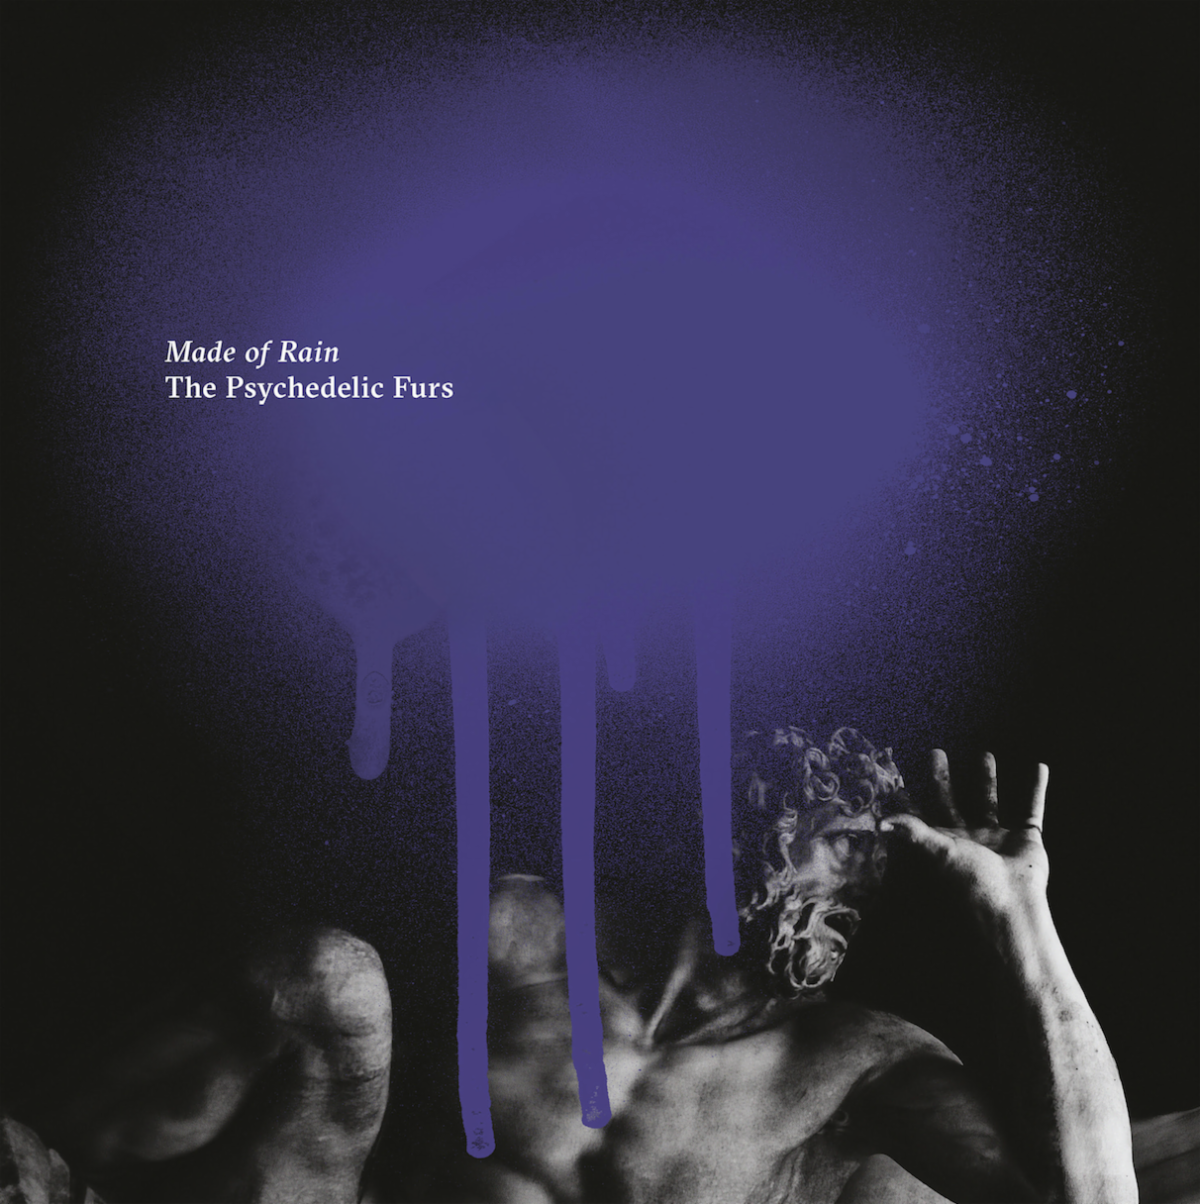 http://www.brooklynvegan.com/files/2020/01/psychedelic-furs-2020-album.png